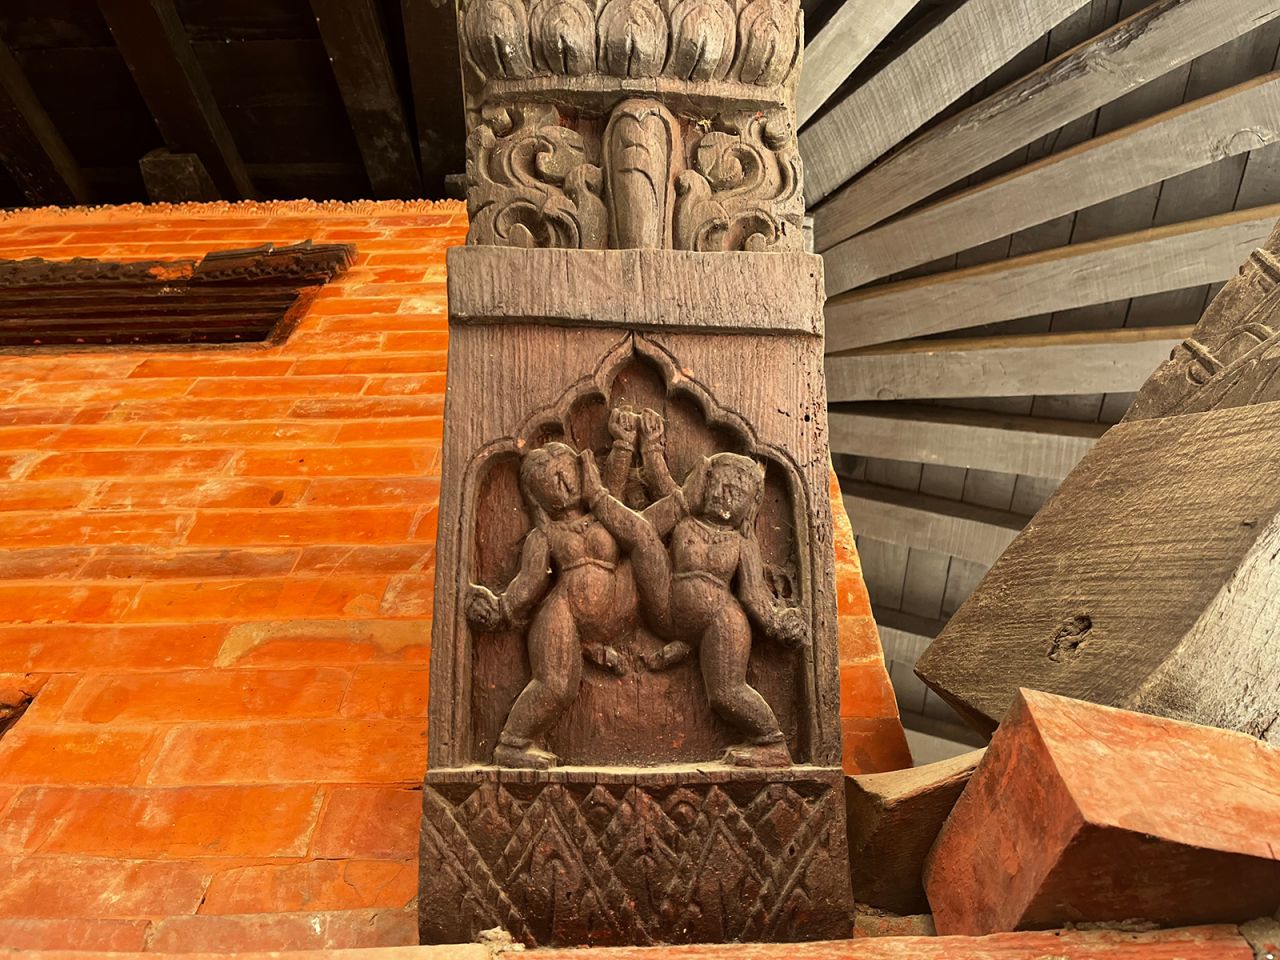 Hai nhân vật nam tham gia vào một hành vi tình dục trong tác phẩm điêu khắc này tại một ngôi đền ở Kathmandu